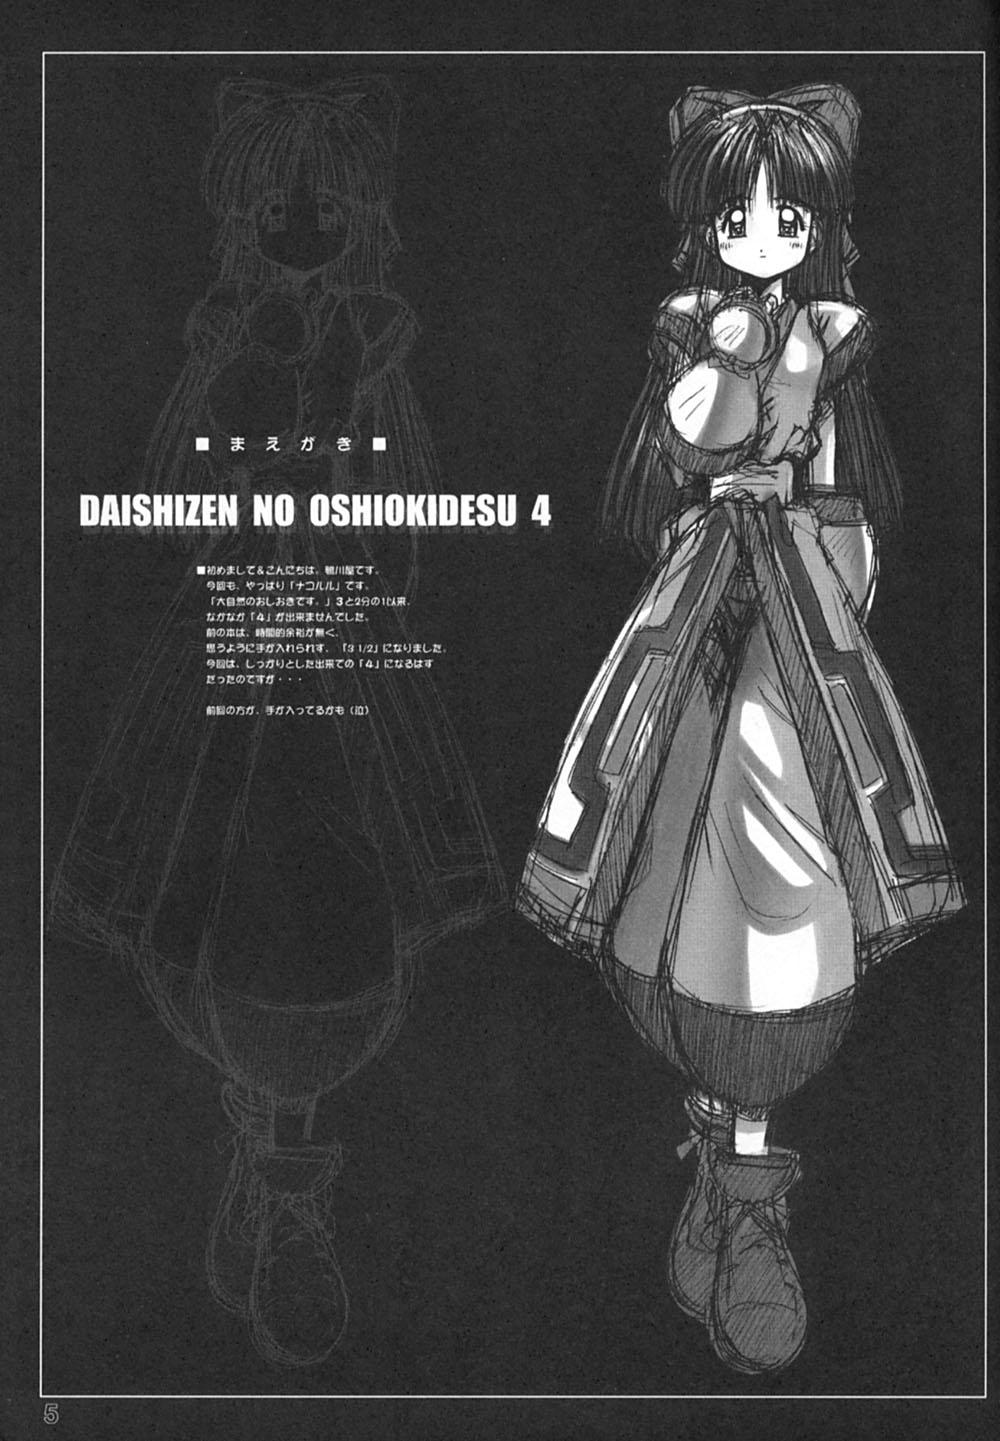 Forbidden Daishizen no Oshioki Desu 4 - Samurai spirits Classy - Page 4